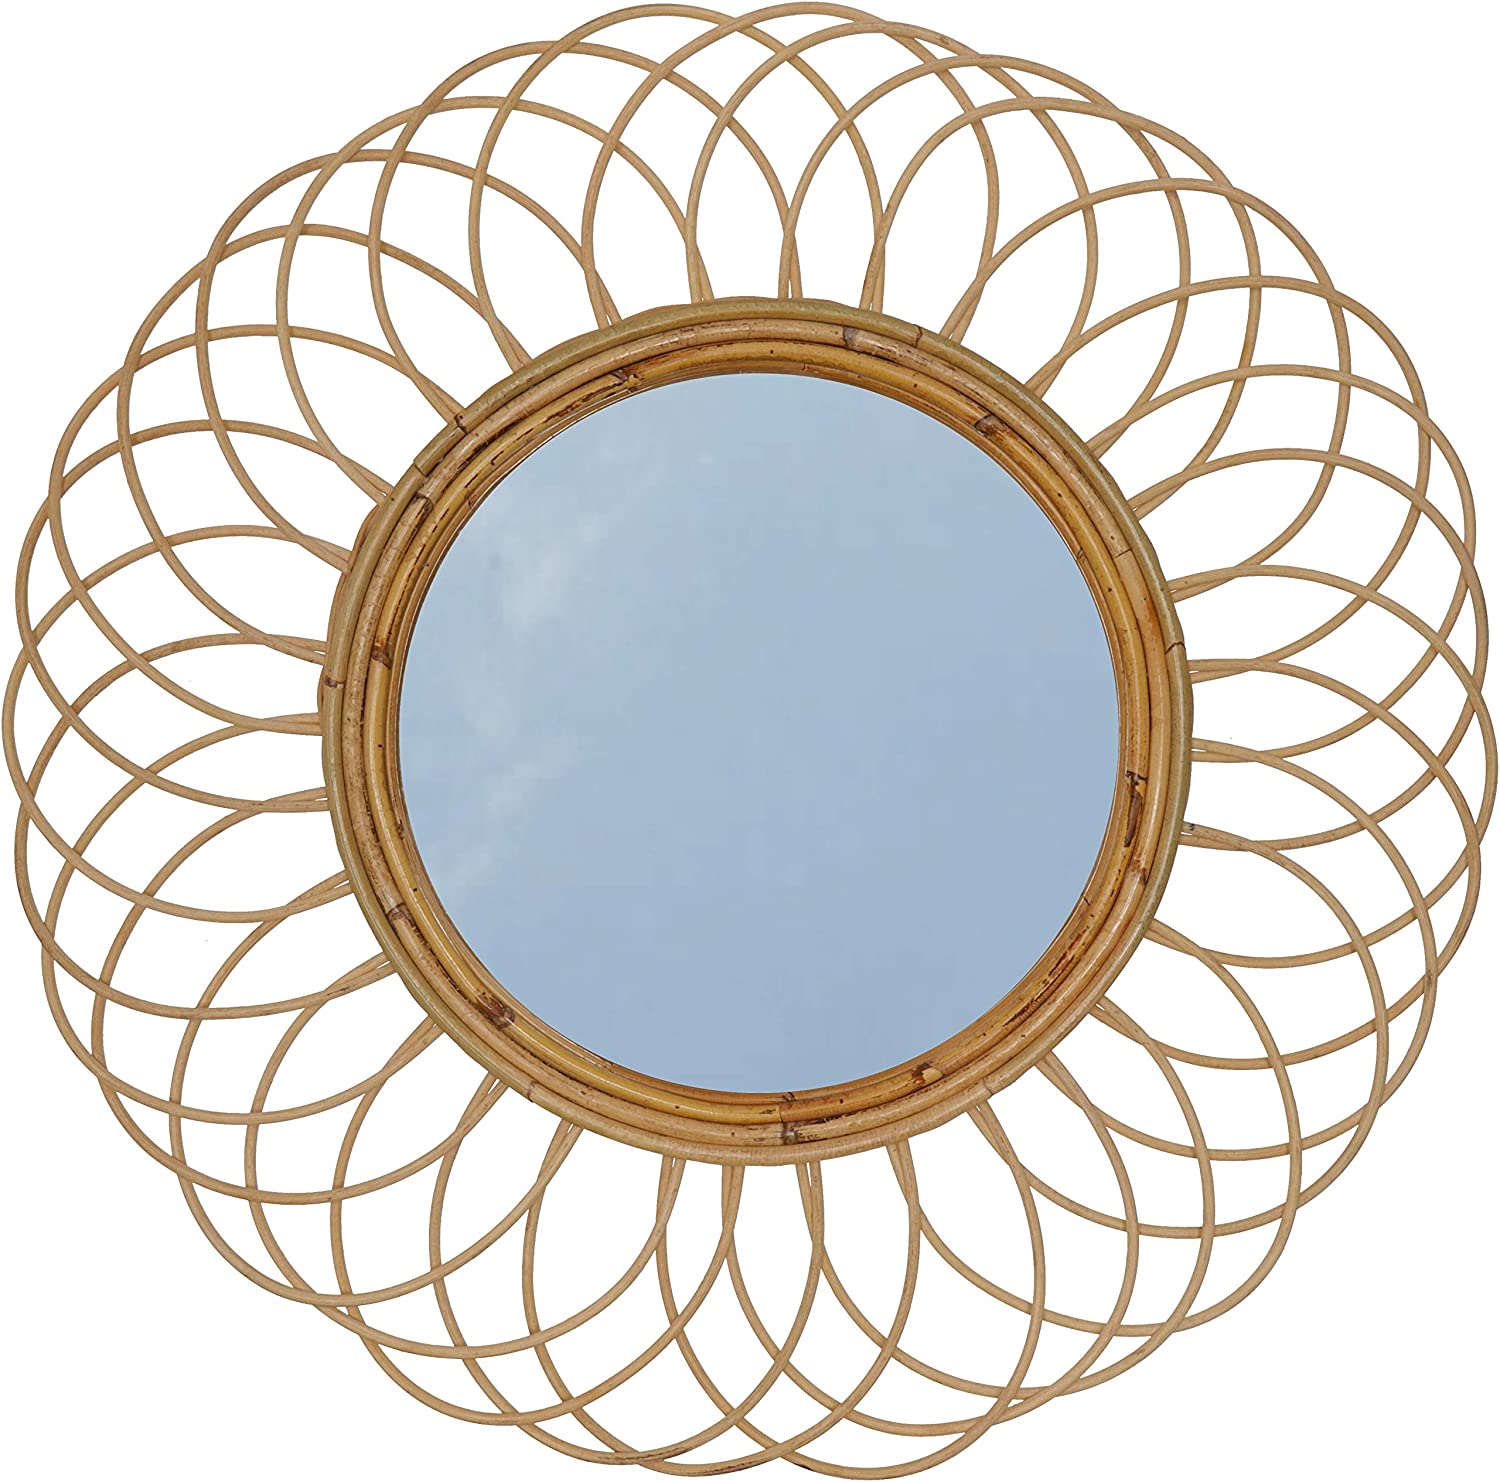 Guru-Shop Handcrafted Mirror-Spiral Mirror Antique White 90 X 60 Cm, Rattan